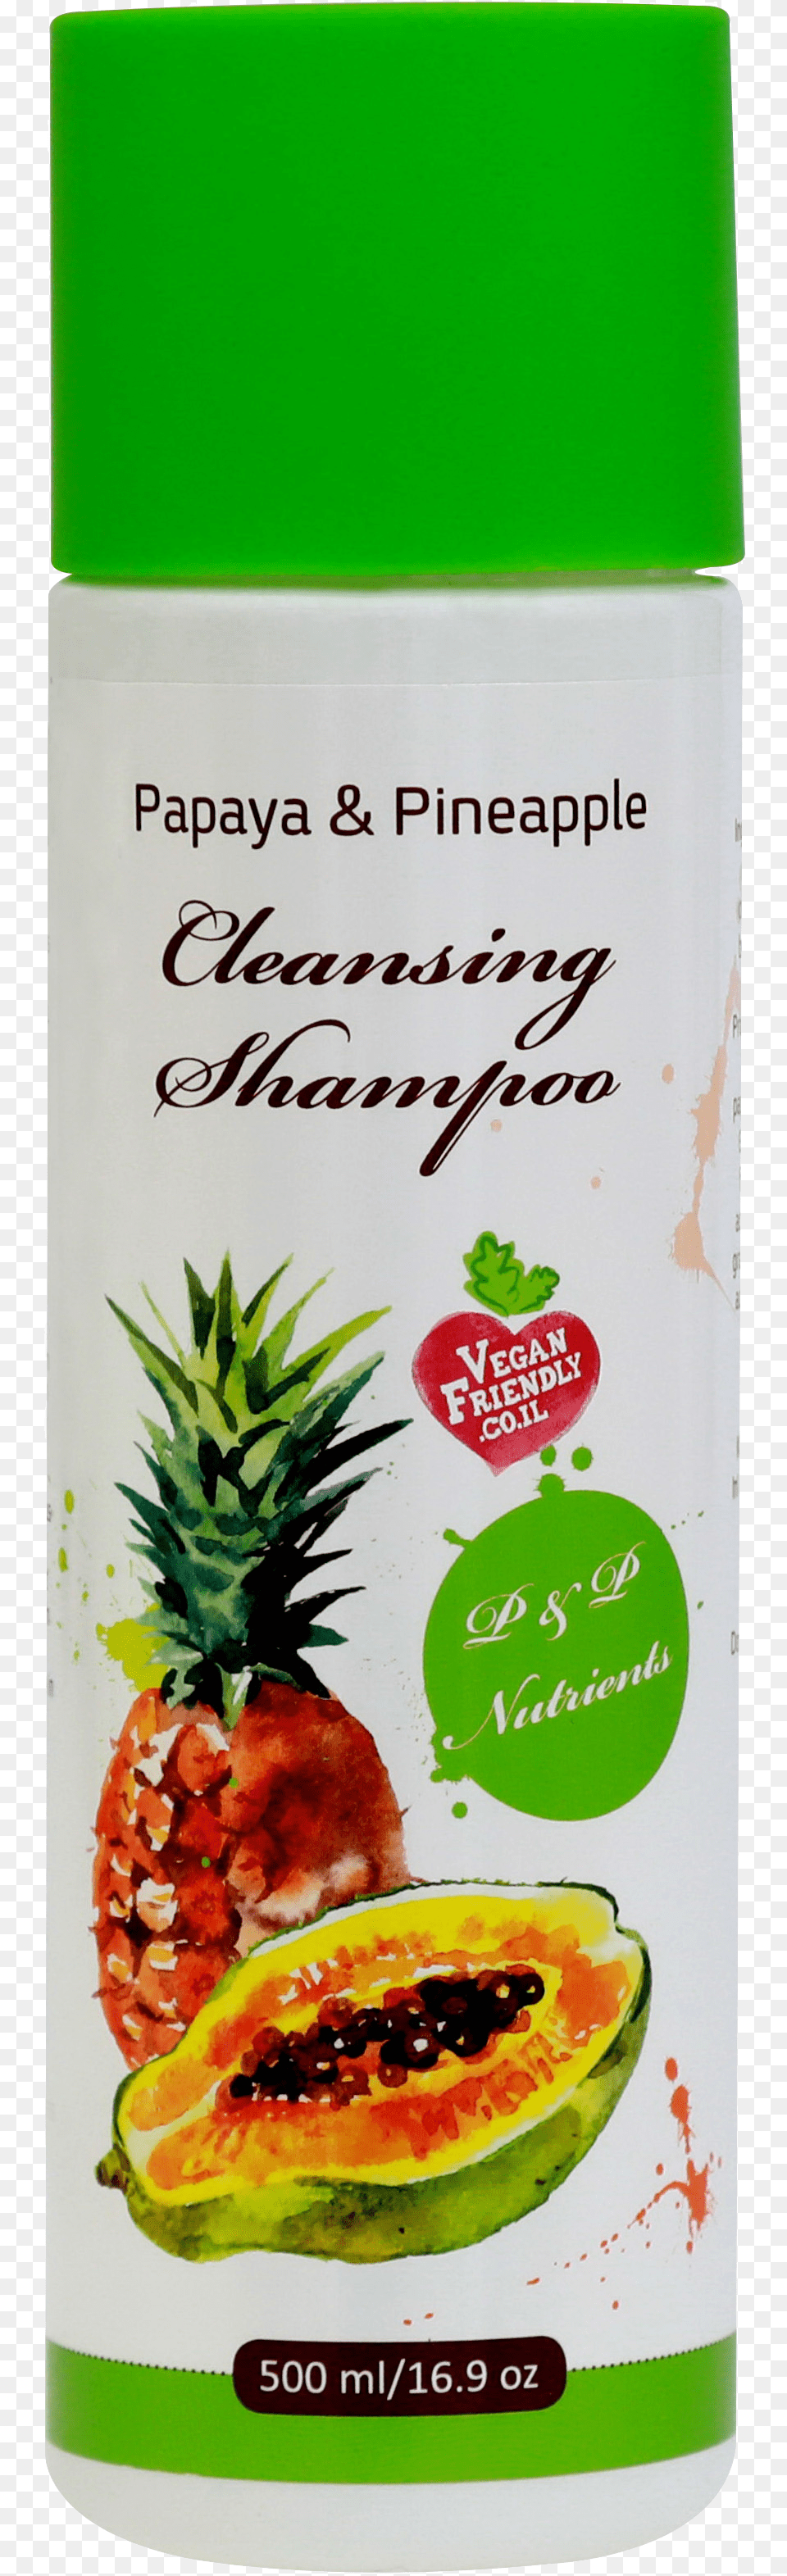 Papaya Pineapple Shampoo, Food, Fruit, Plant, Produce Png Image